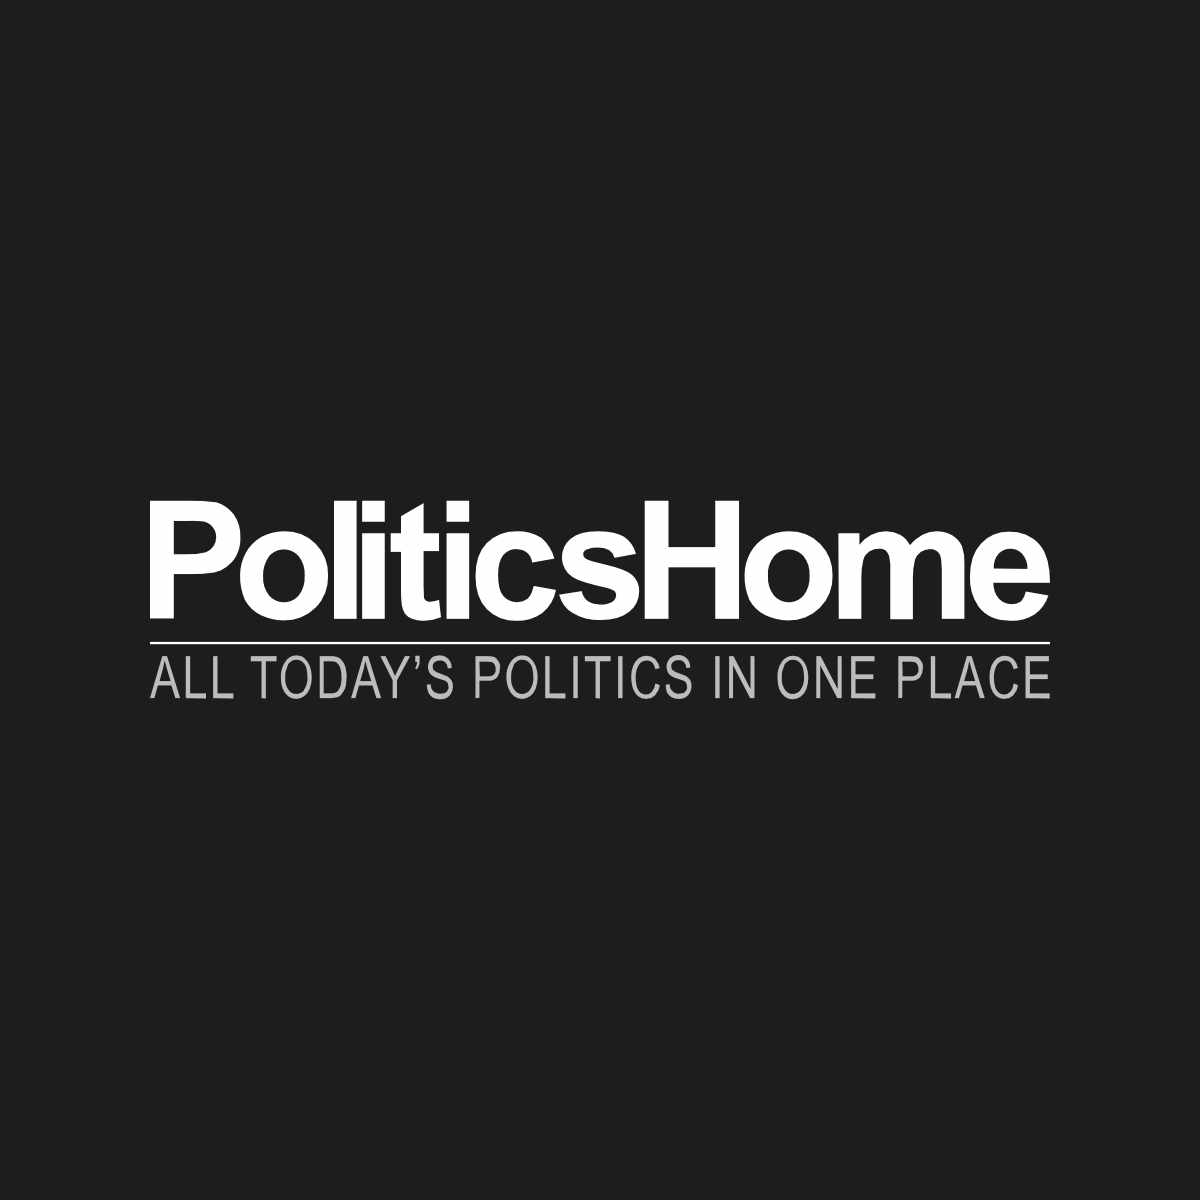 www.politicshome.com